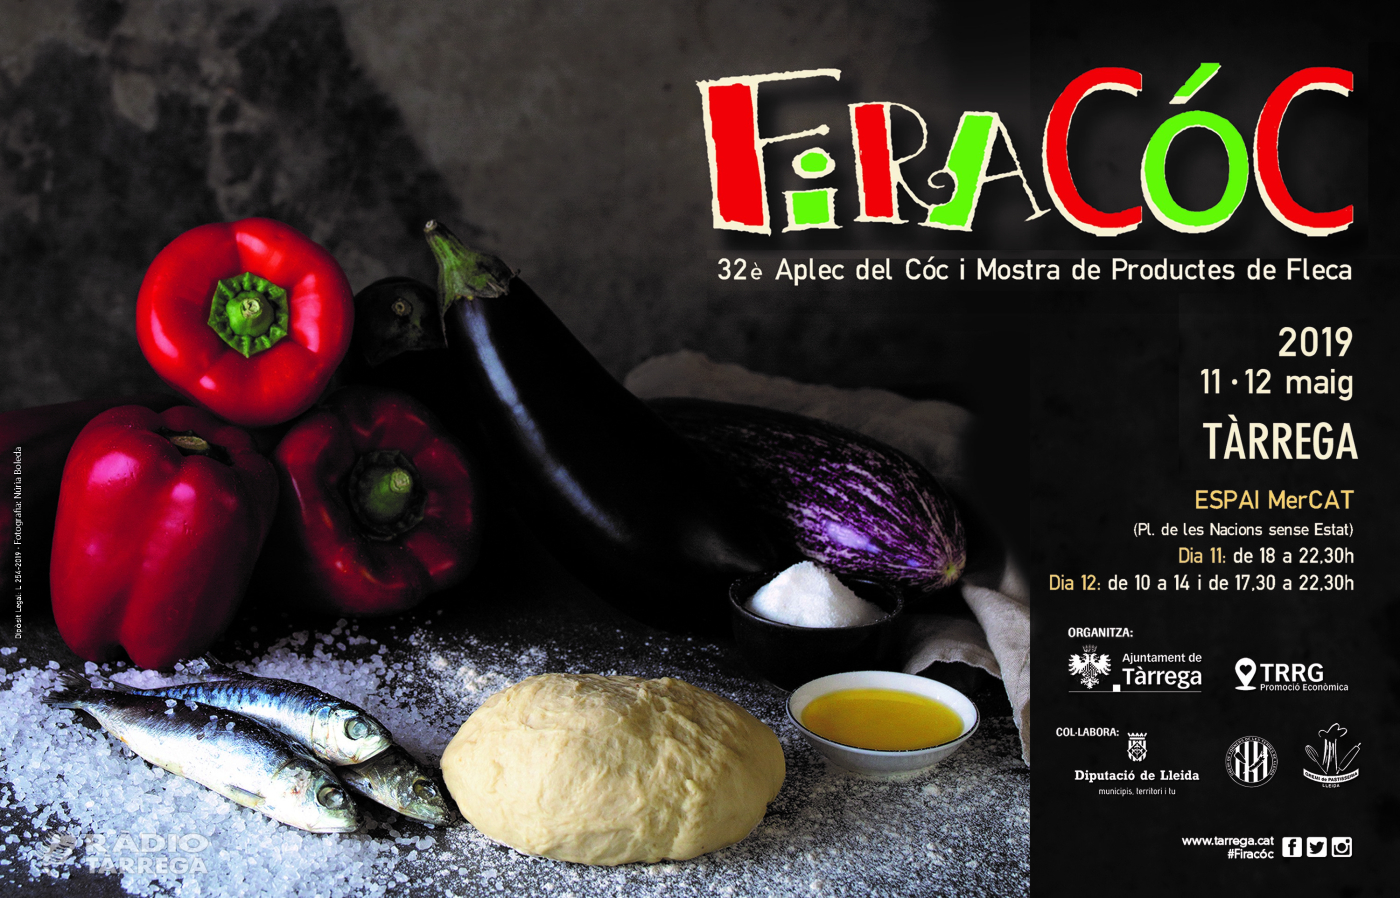 Tàrrega celebra la Firacóc 2019 els dies 11 i 12 de maig dins l’apartat gastronòmic de la Festa Major